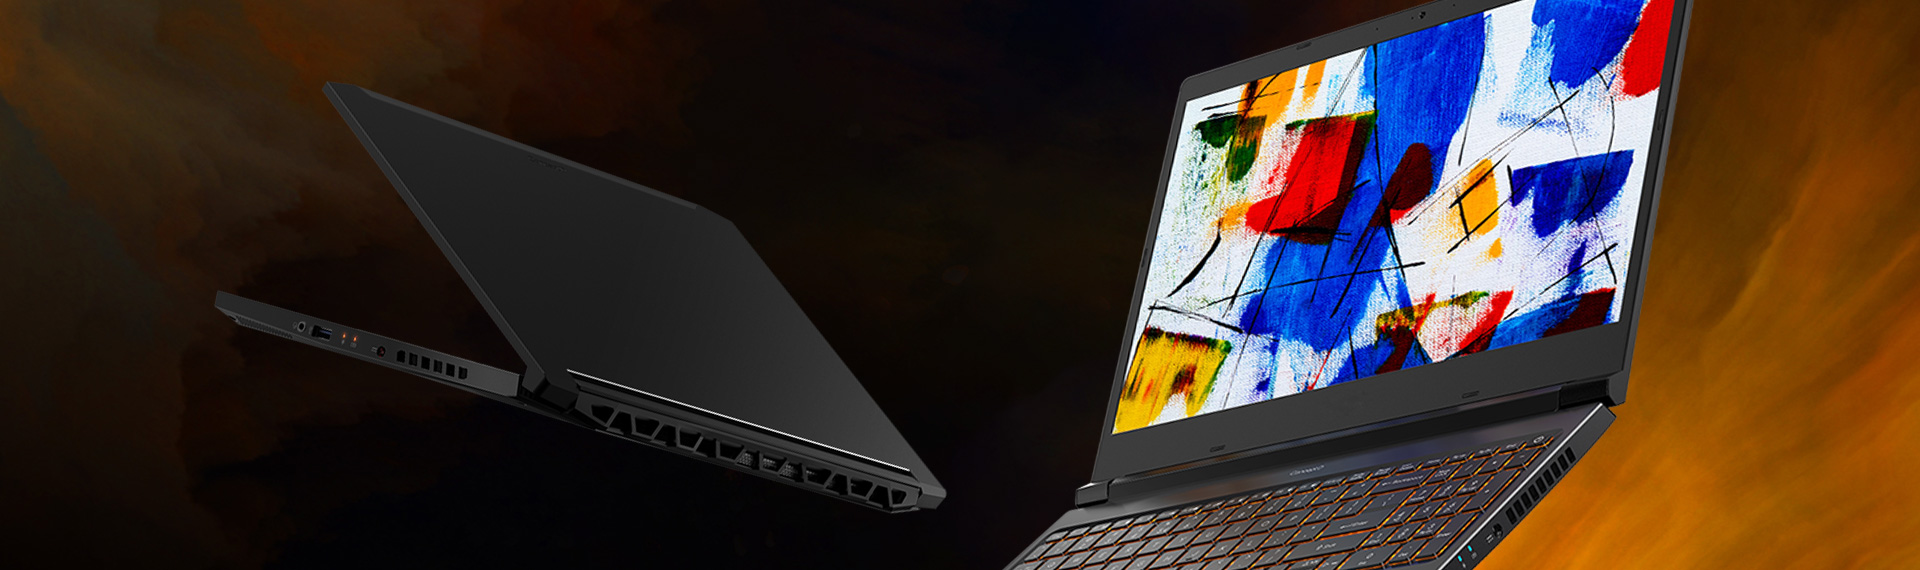 Inovasi Acer dalam Jajaran Laptop ConceptD Pro di Next @Acer 2019